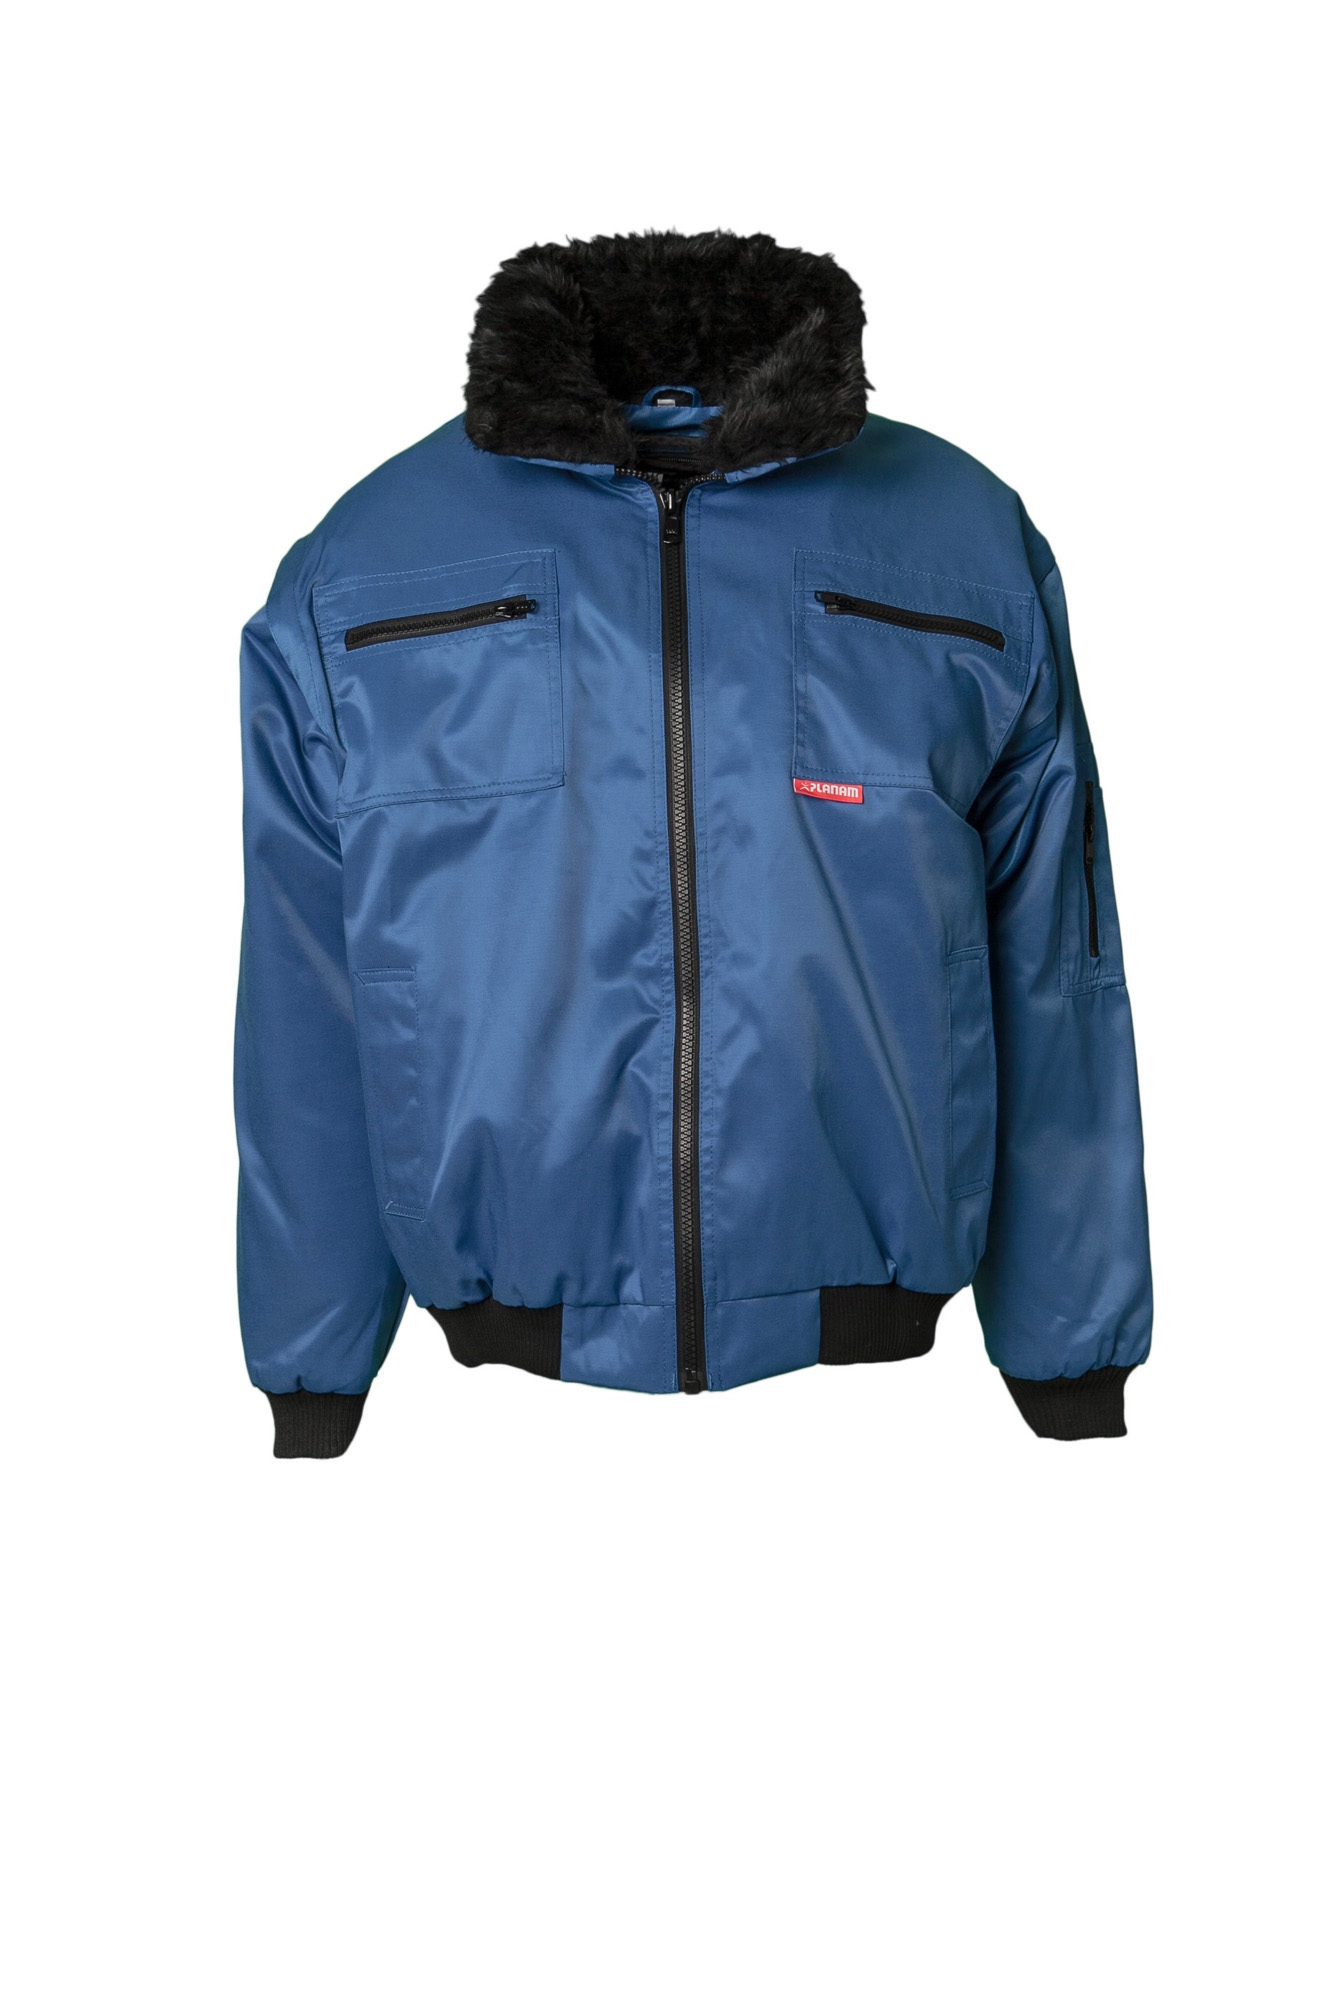 Planam Gletscher Comfort Jacke 3-in-1 Größe S - 5XL in 6 Farben